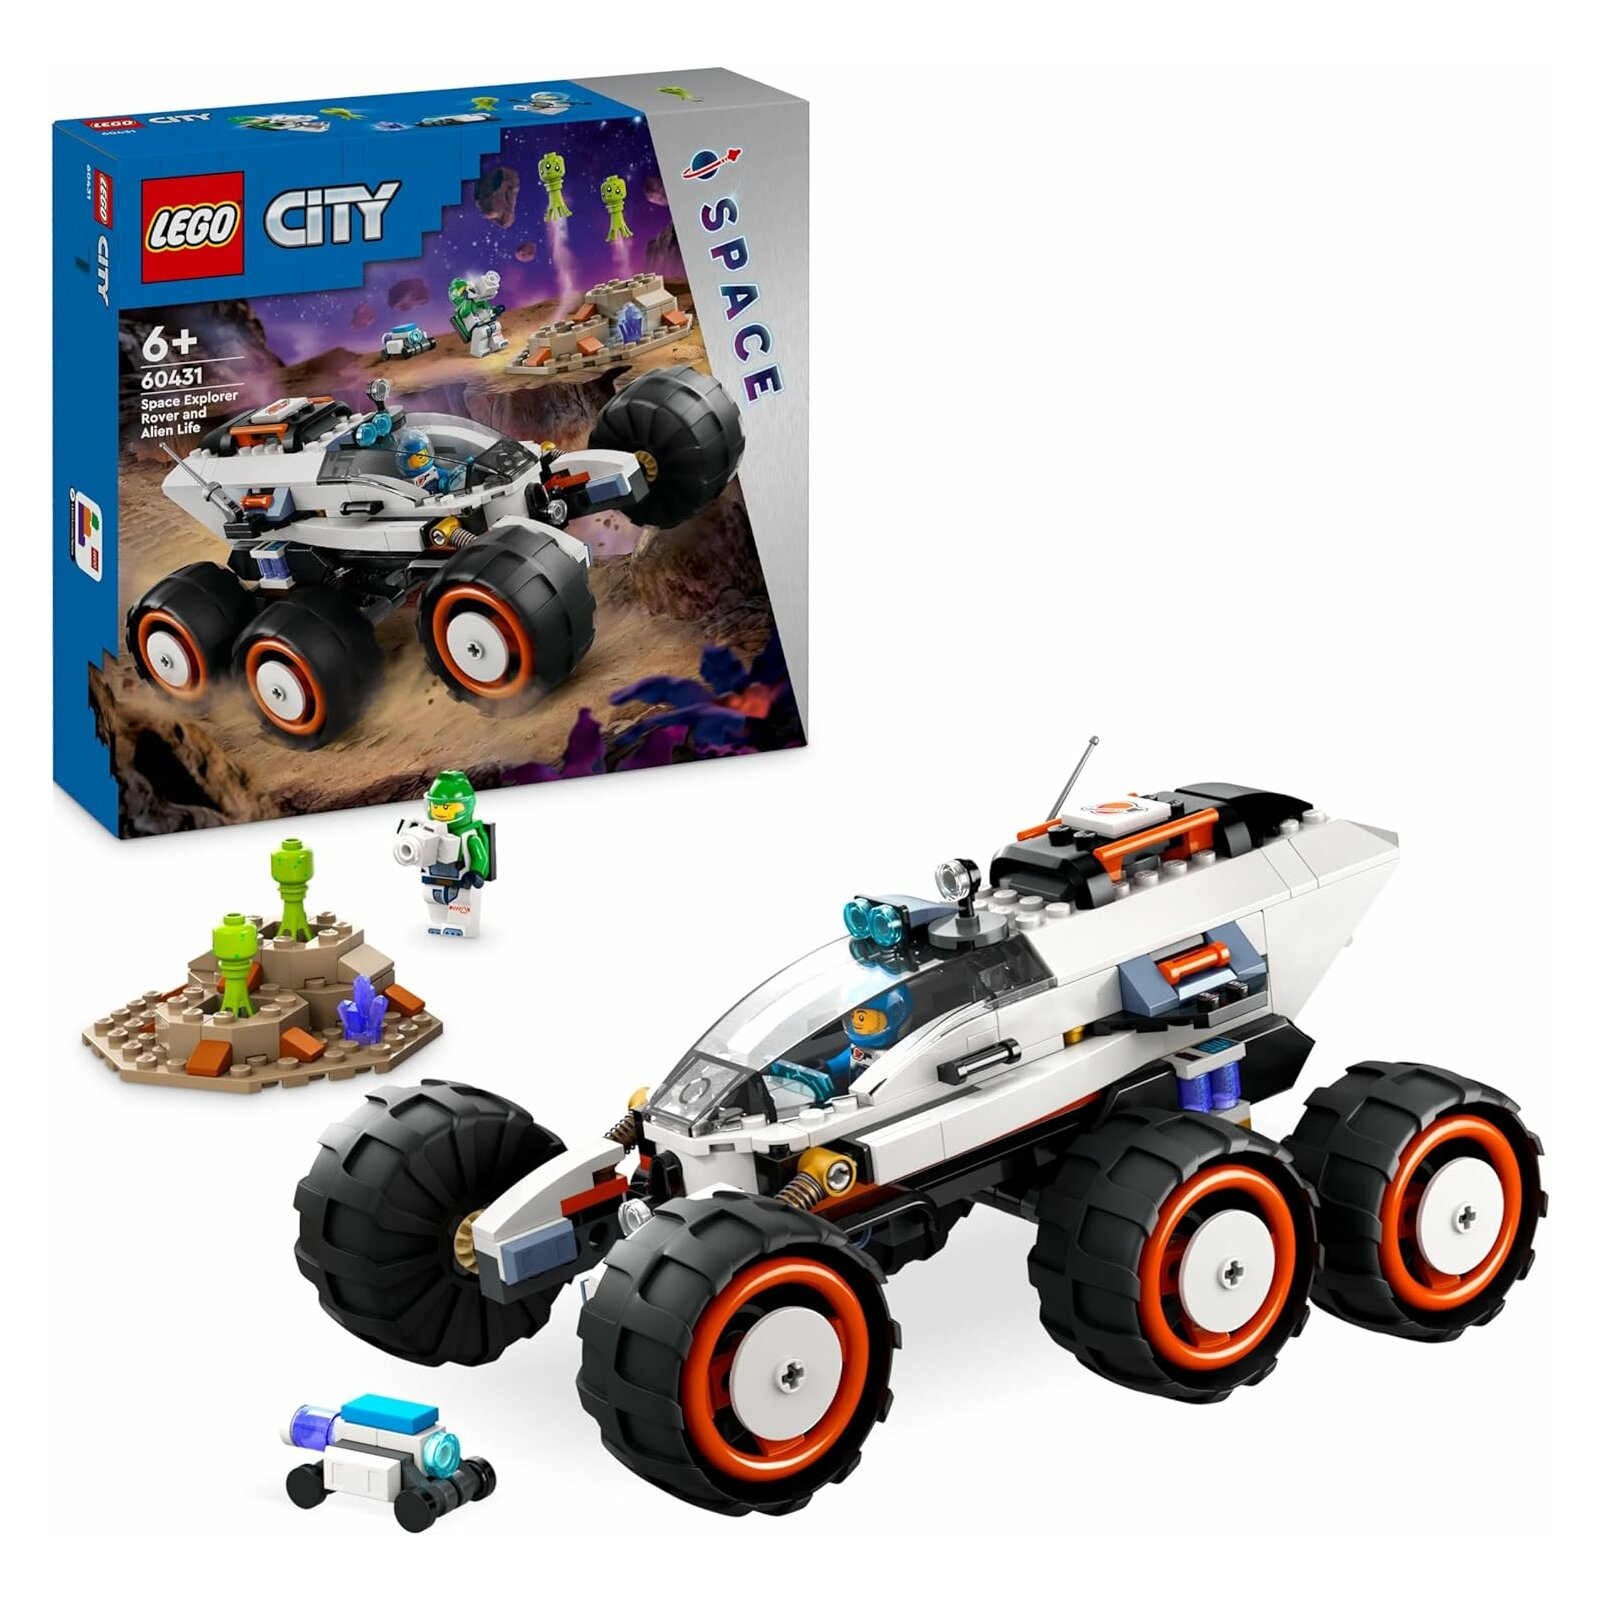 LEGO - City - 60431 Weltraum-Rover mit Außerirdischen